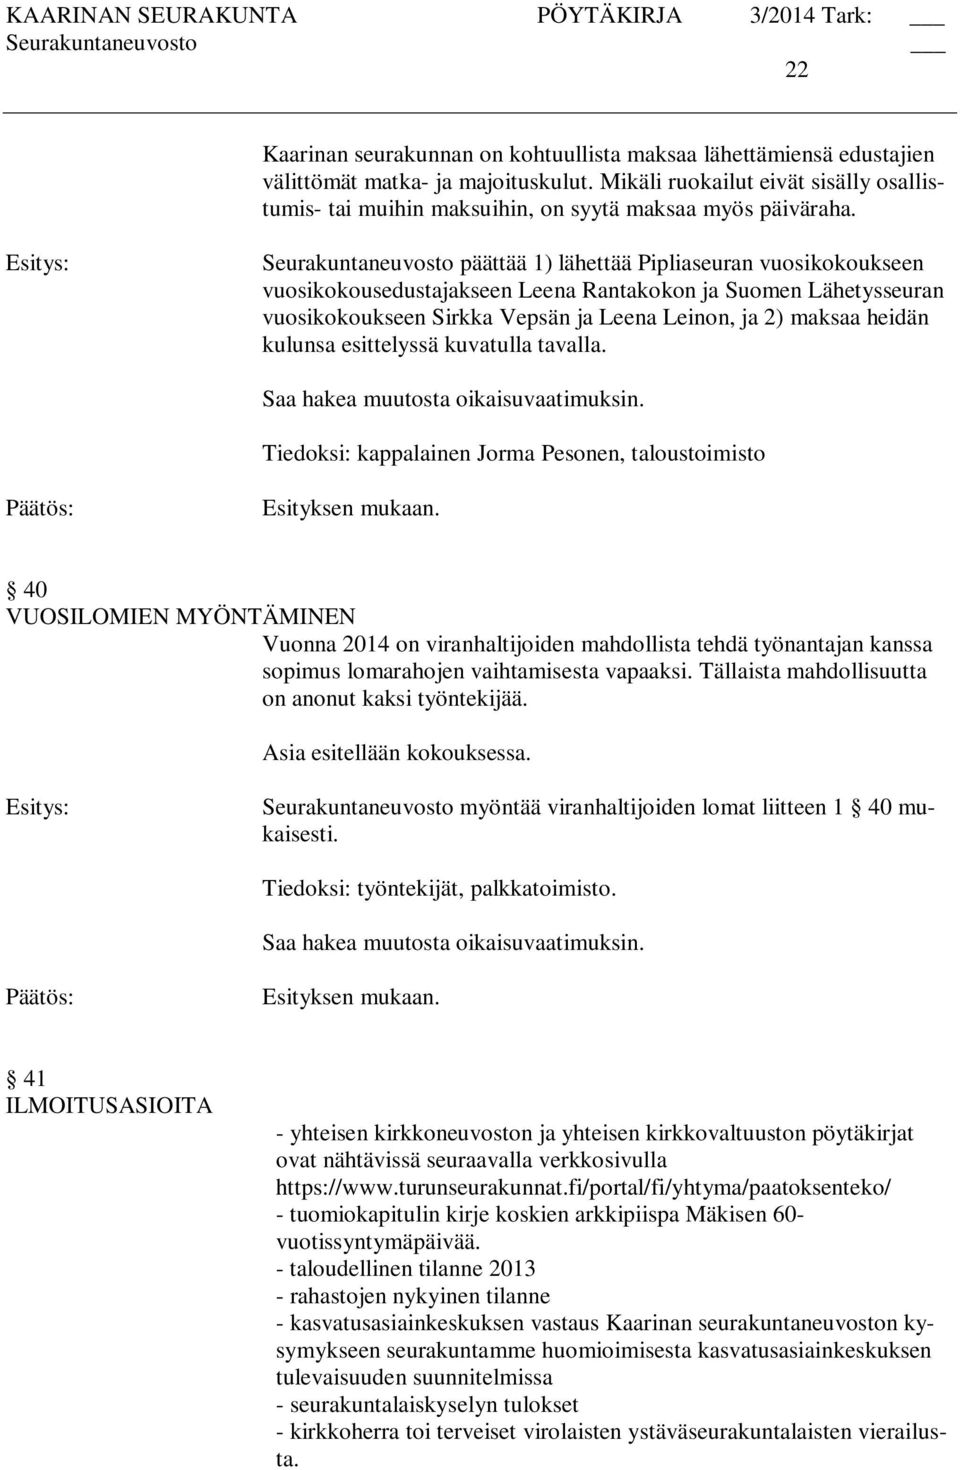 Seurakuntaneuvosto päättää 1) lähettää Pipliaseuran vuosikokoukseen vuosikokousedustajakseen Leena Rantakokon ja Suomen Lähetysseuran vuosikokoukseen Sirkka Vepsän ja Leena Leinon, ja 2) maksaa